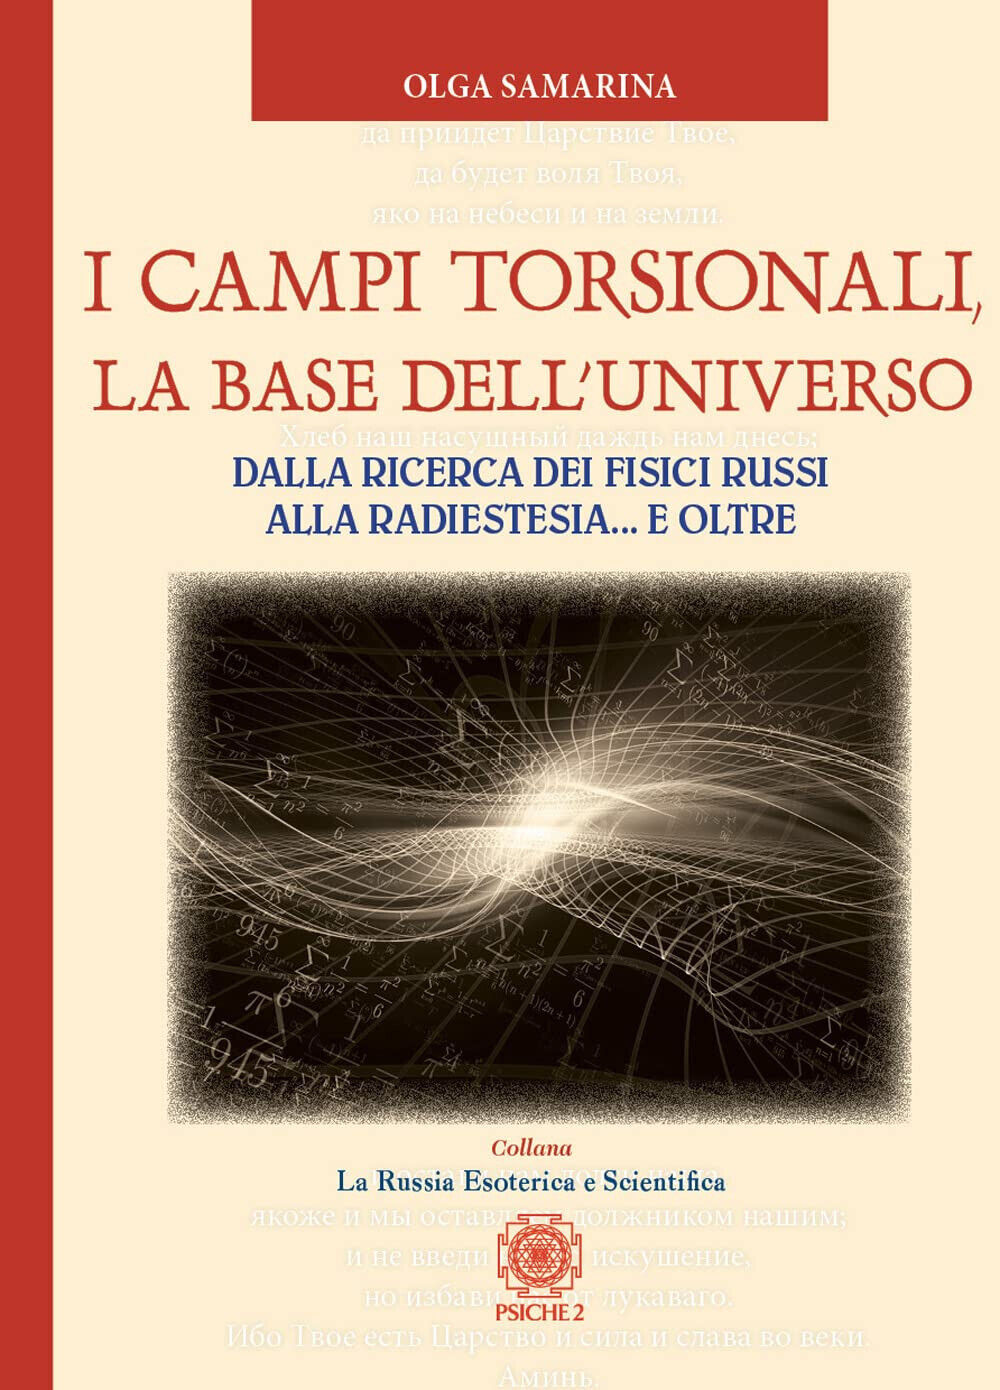 I campi torsionali, la base dell Universo - Olga Samarina - Psiche 2, 2022 libro usato